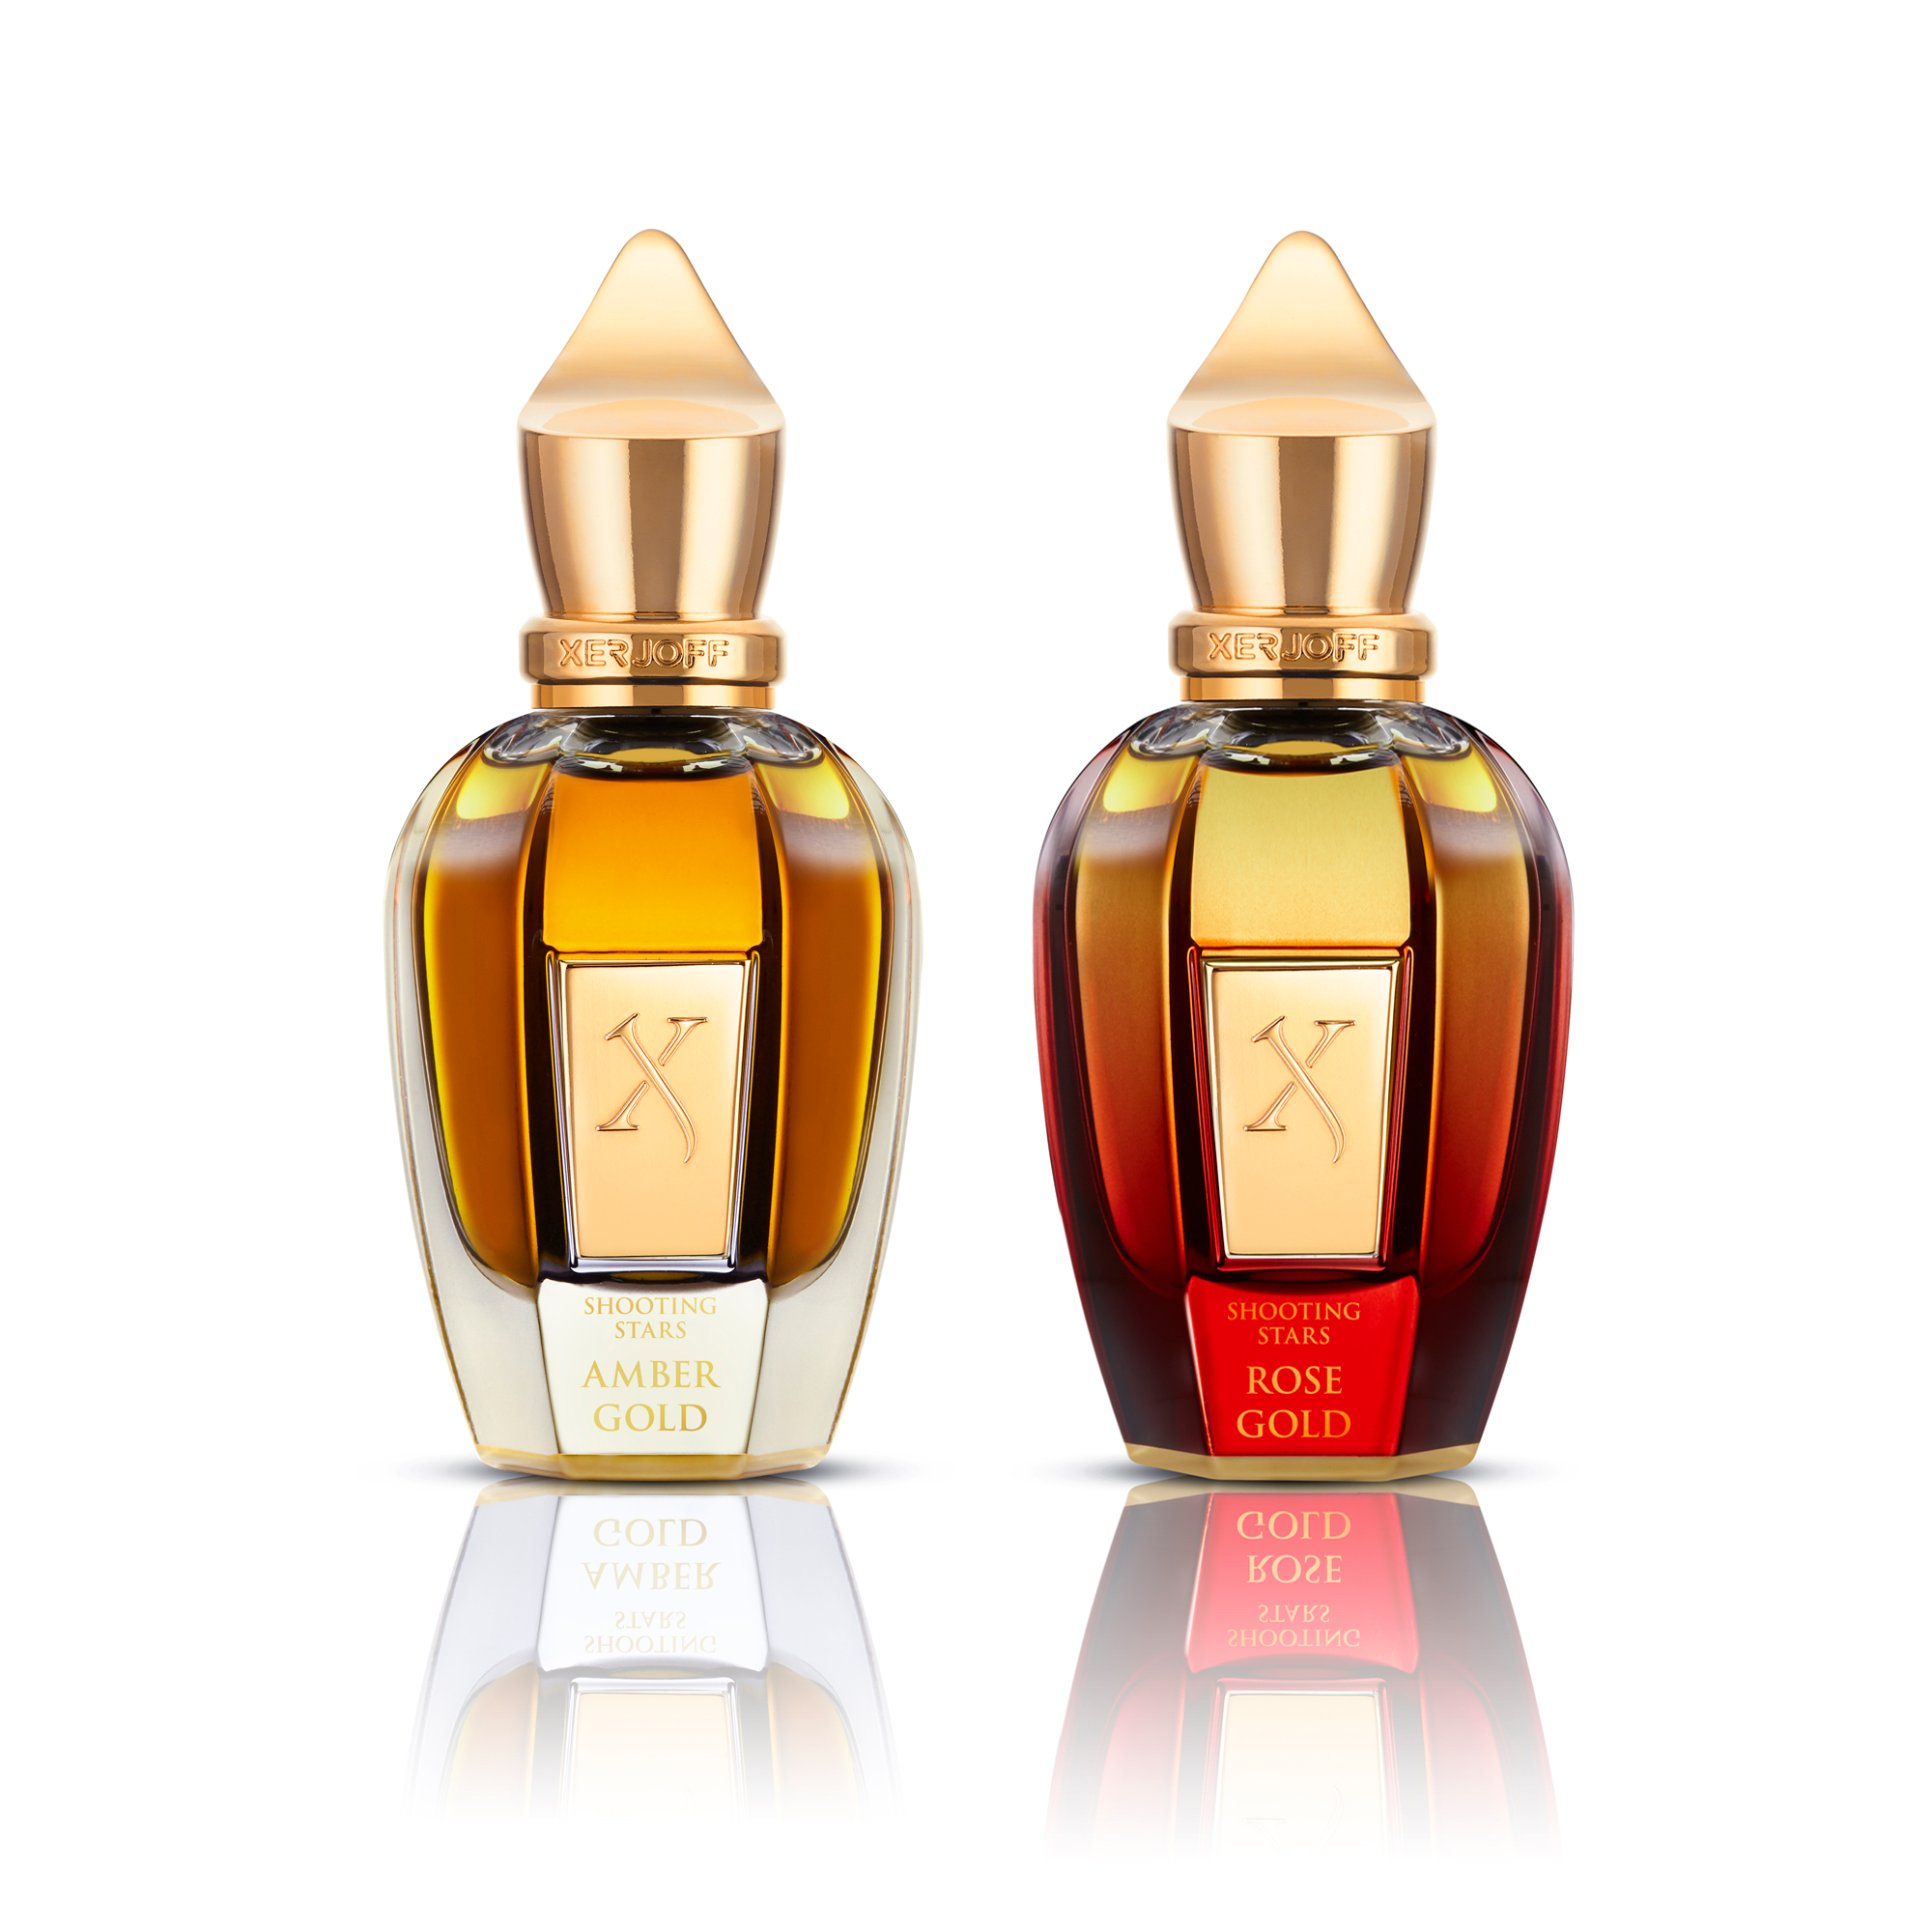 Amber Gold/ Rose Gold 2x Eau de Parfum 50ml   